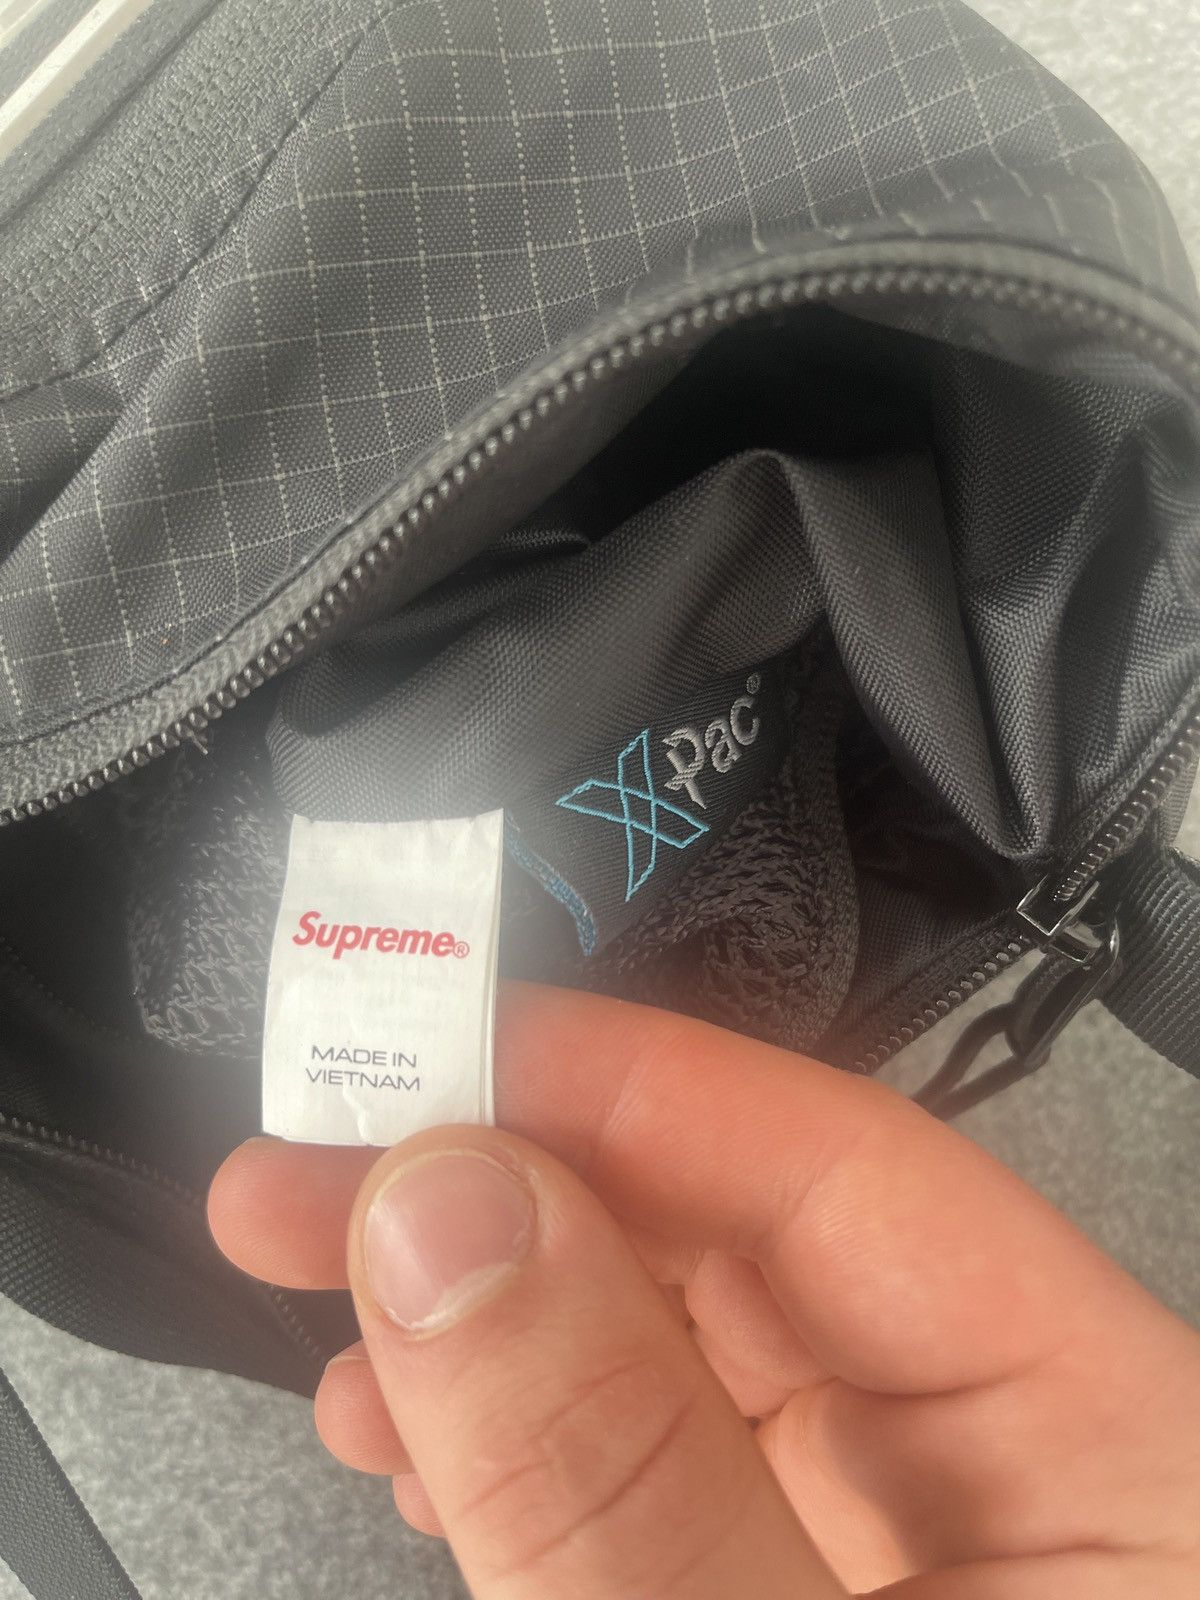 Supreme Supreme Shoulder Bag | Grailed